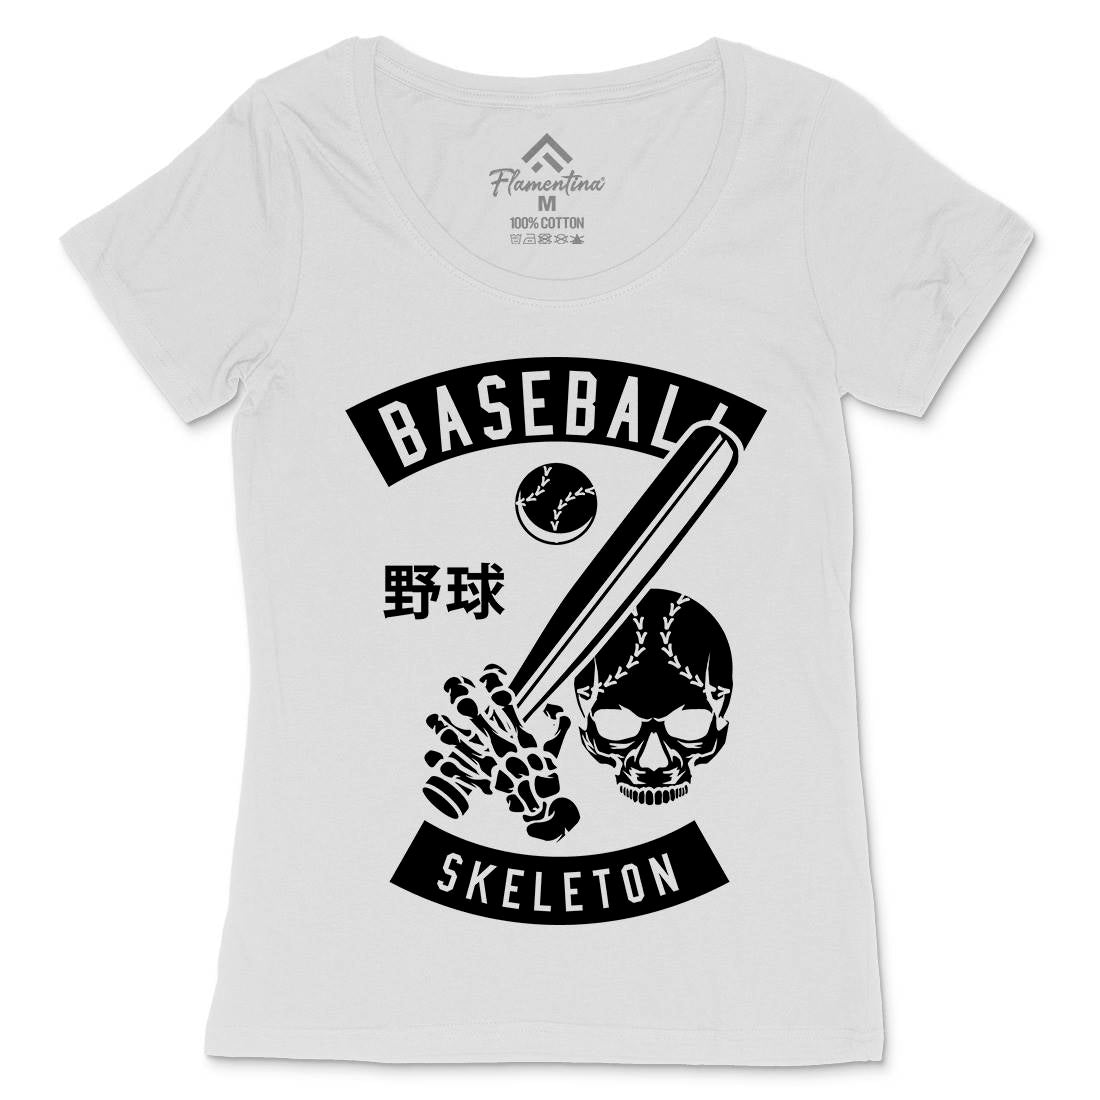 Baseball Skeleton Womens Scoop Neck T-Shirt Sport B489